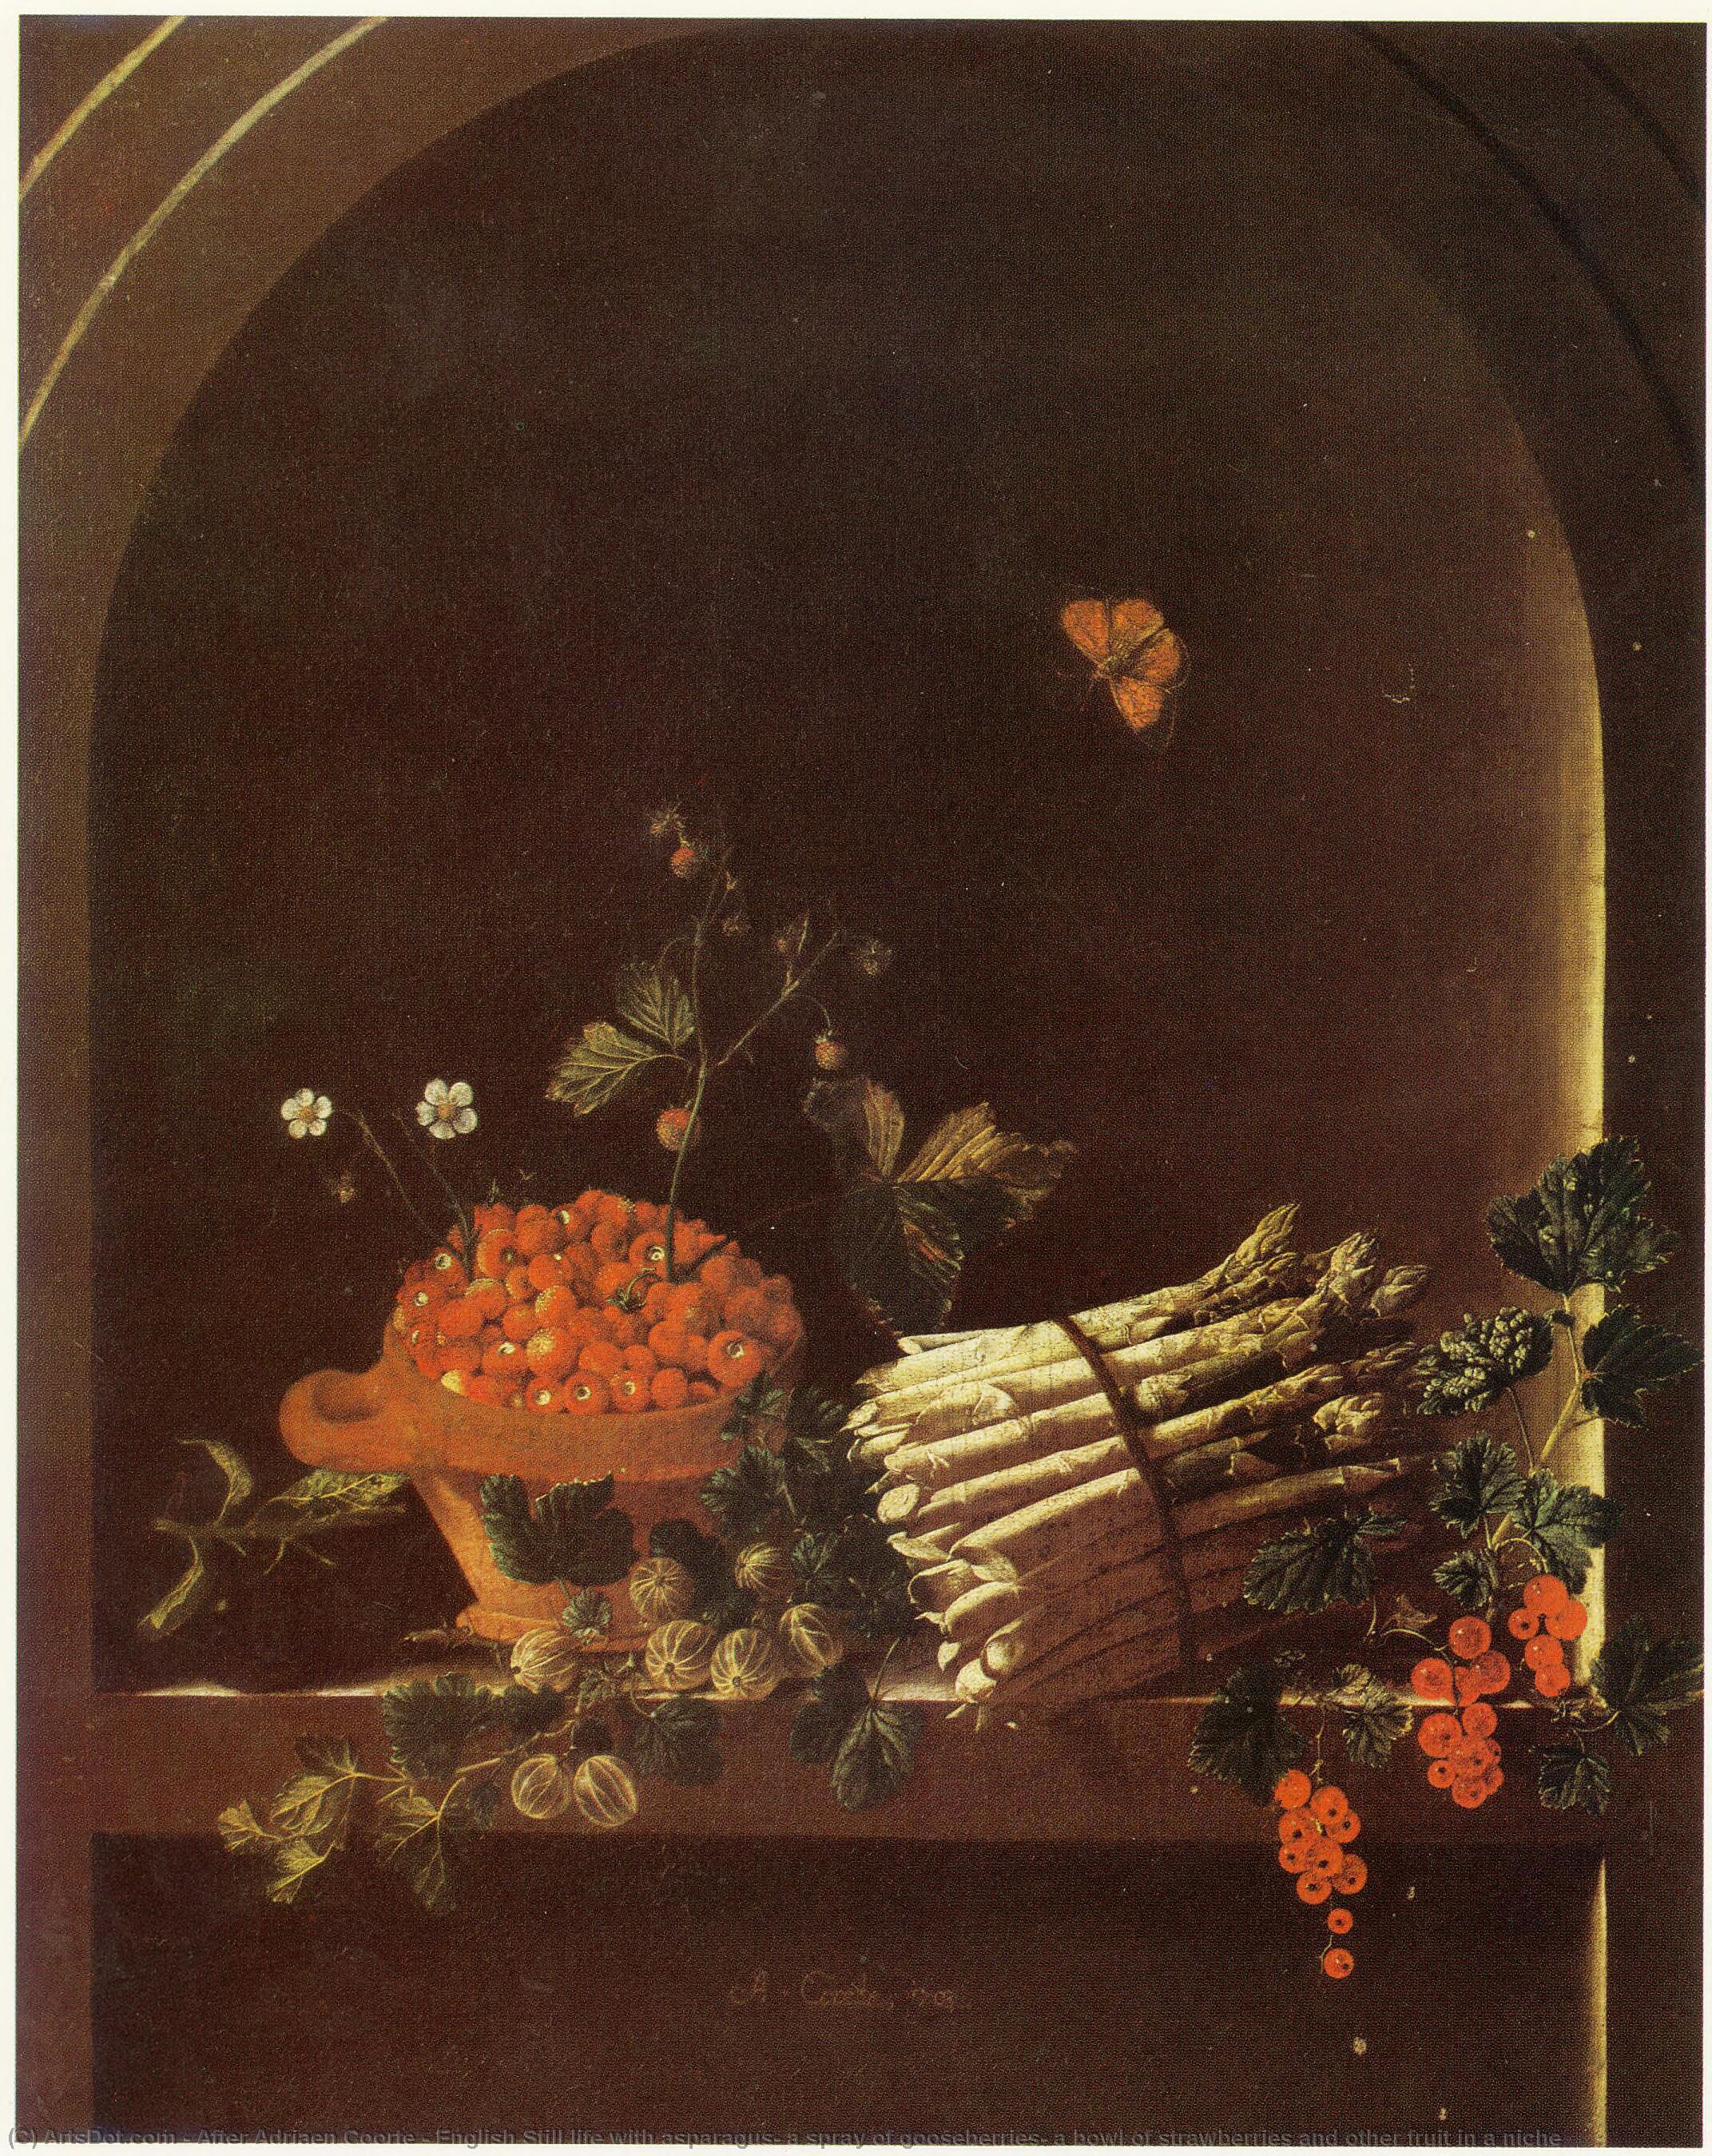 顺序 油畫 英语仍然活着,有别的颜色、喷洒 go、草莓 bow和其他水果。, 1703 通过 After Adriaen Coorte (1665-1707) | ArtsDot.com